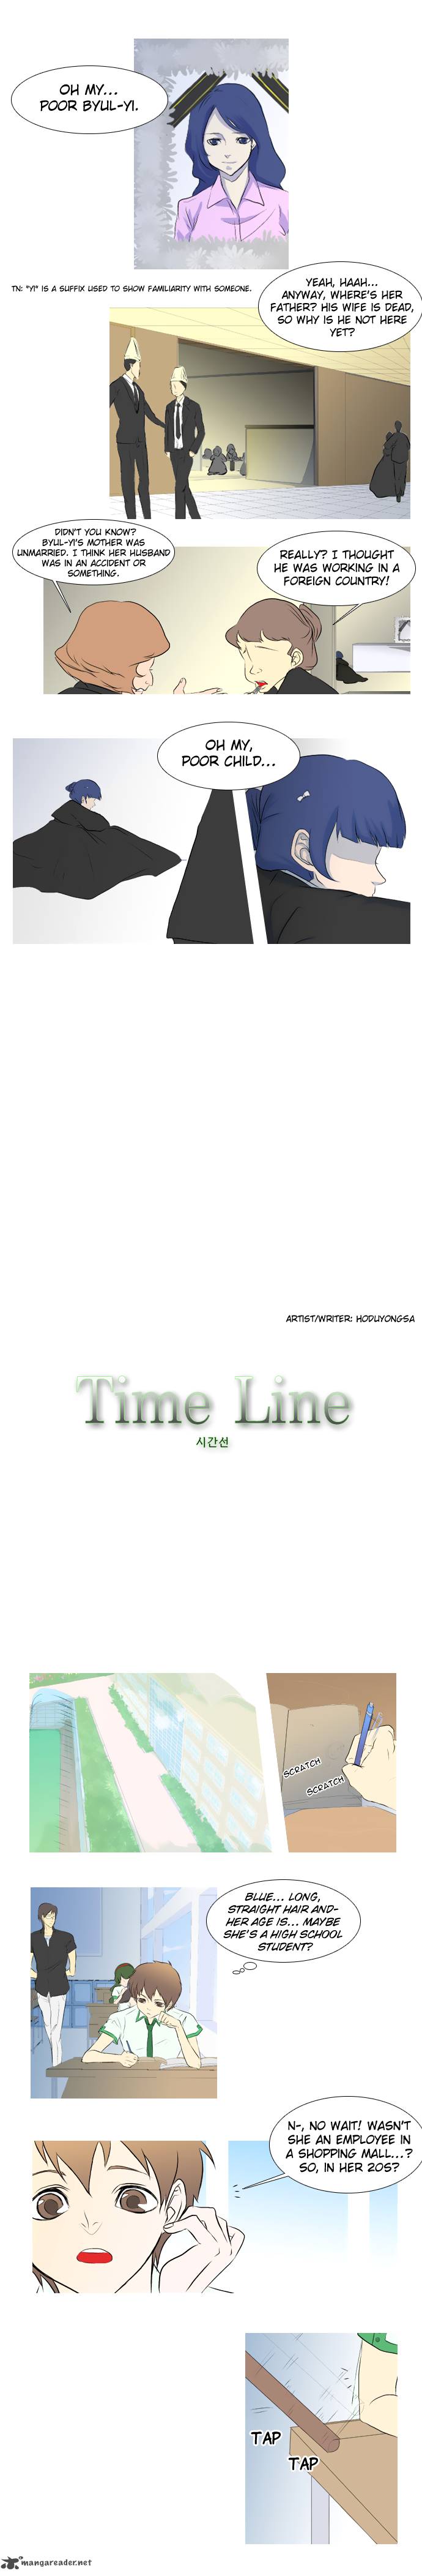 timeline_3_2